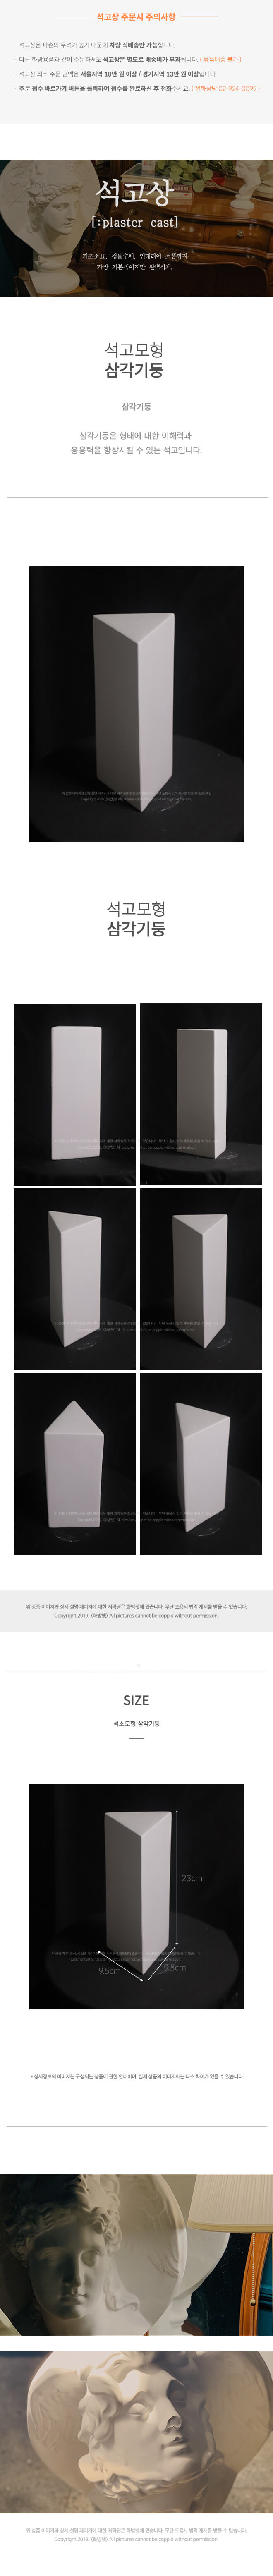 삼각기둥 9.5 x 23 cm  석고모형 , 석고상, 조각상, 인테리어 소품